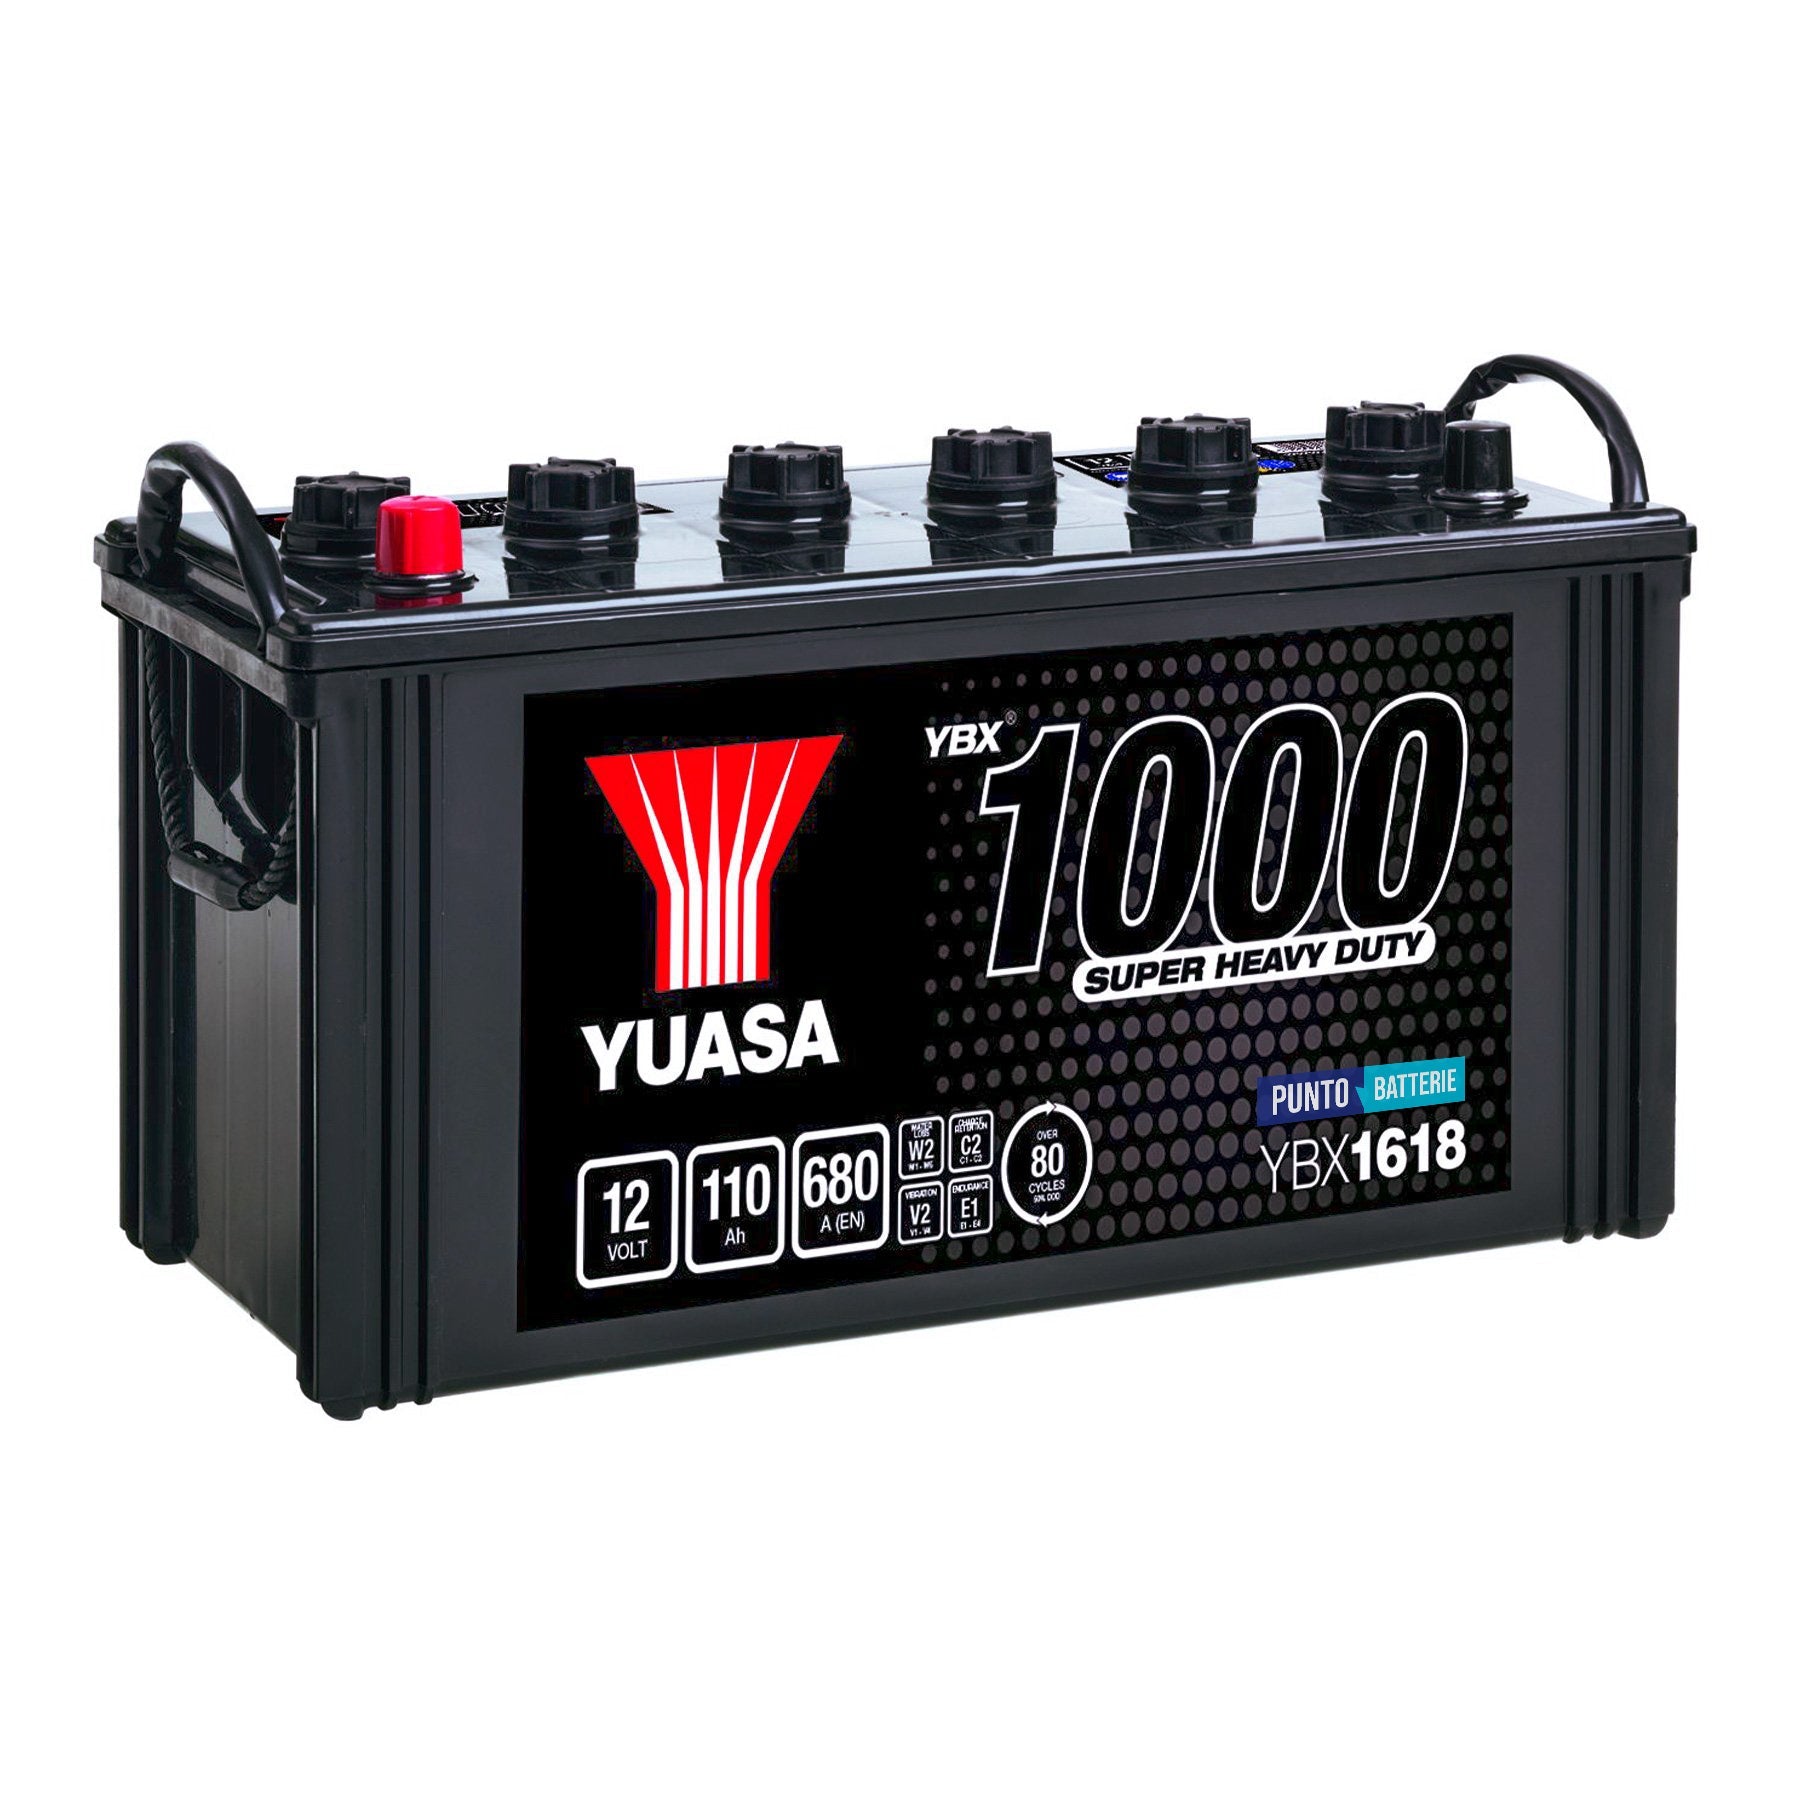 Batteria originale Yuasa YBX1000 YBX1618, dimensioni 407 x 176 x 234, polo positivo a sinistra, 12 volt, 110 amperora, 680 ampere. Batteria per camion e veicoli pesanti.